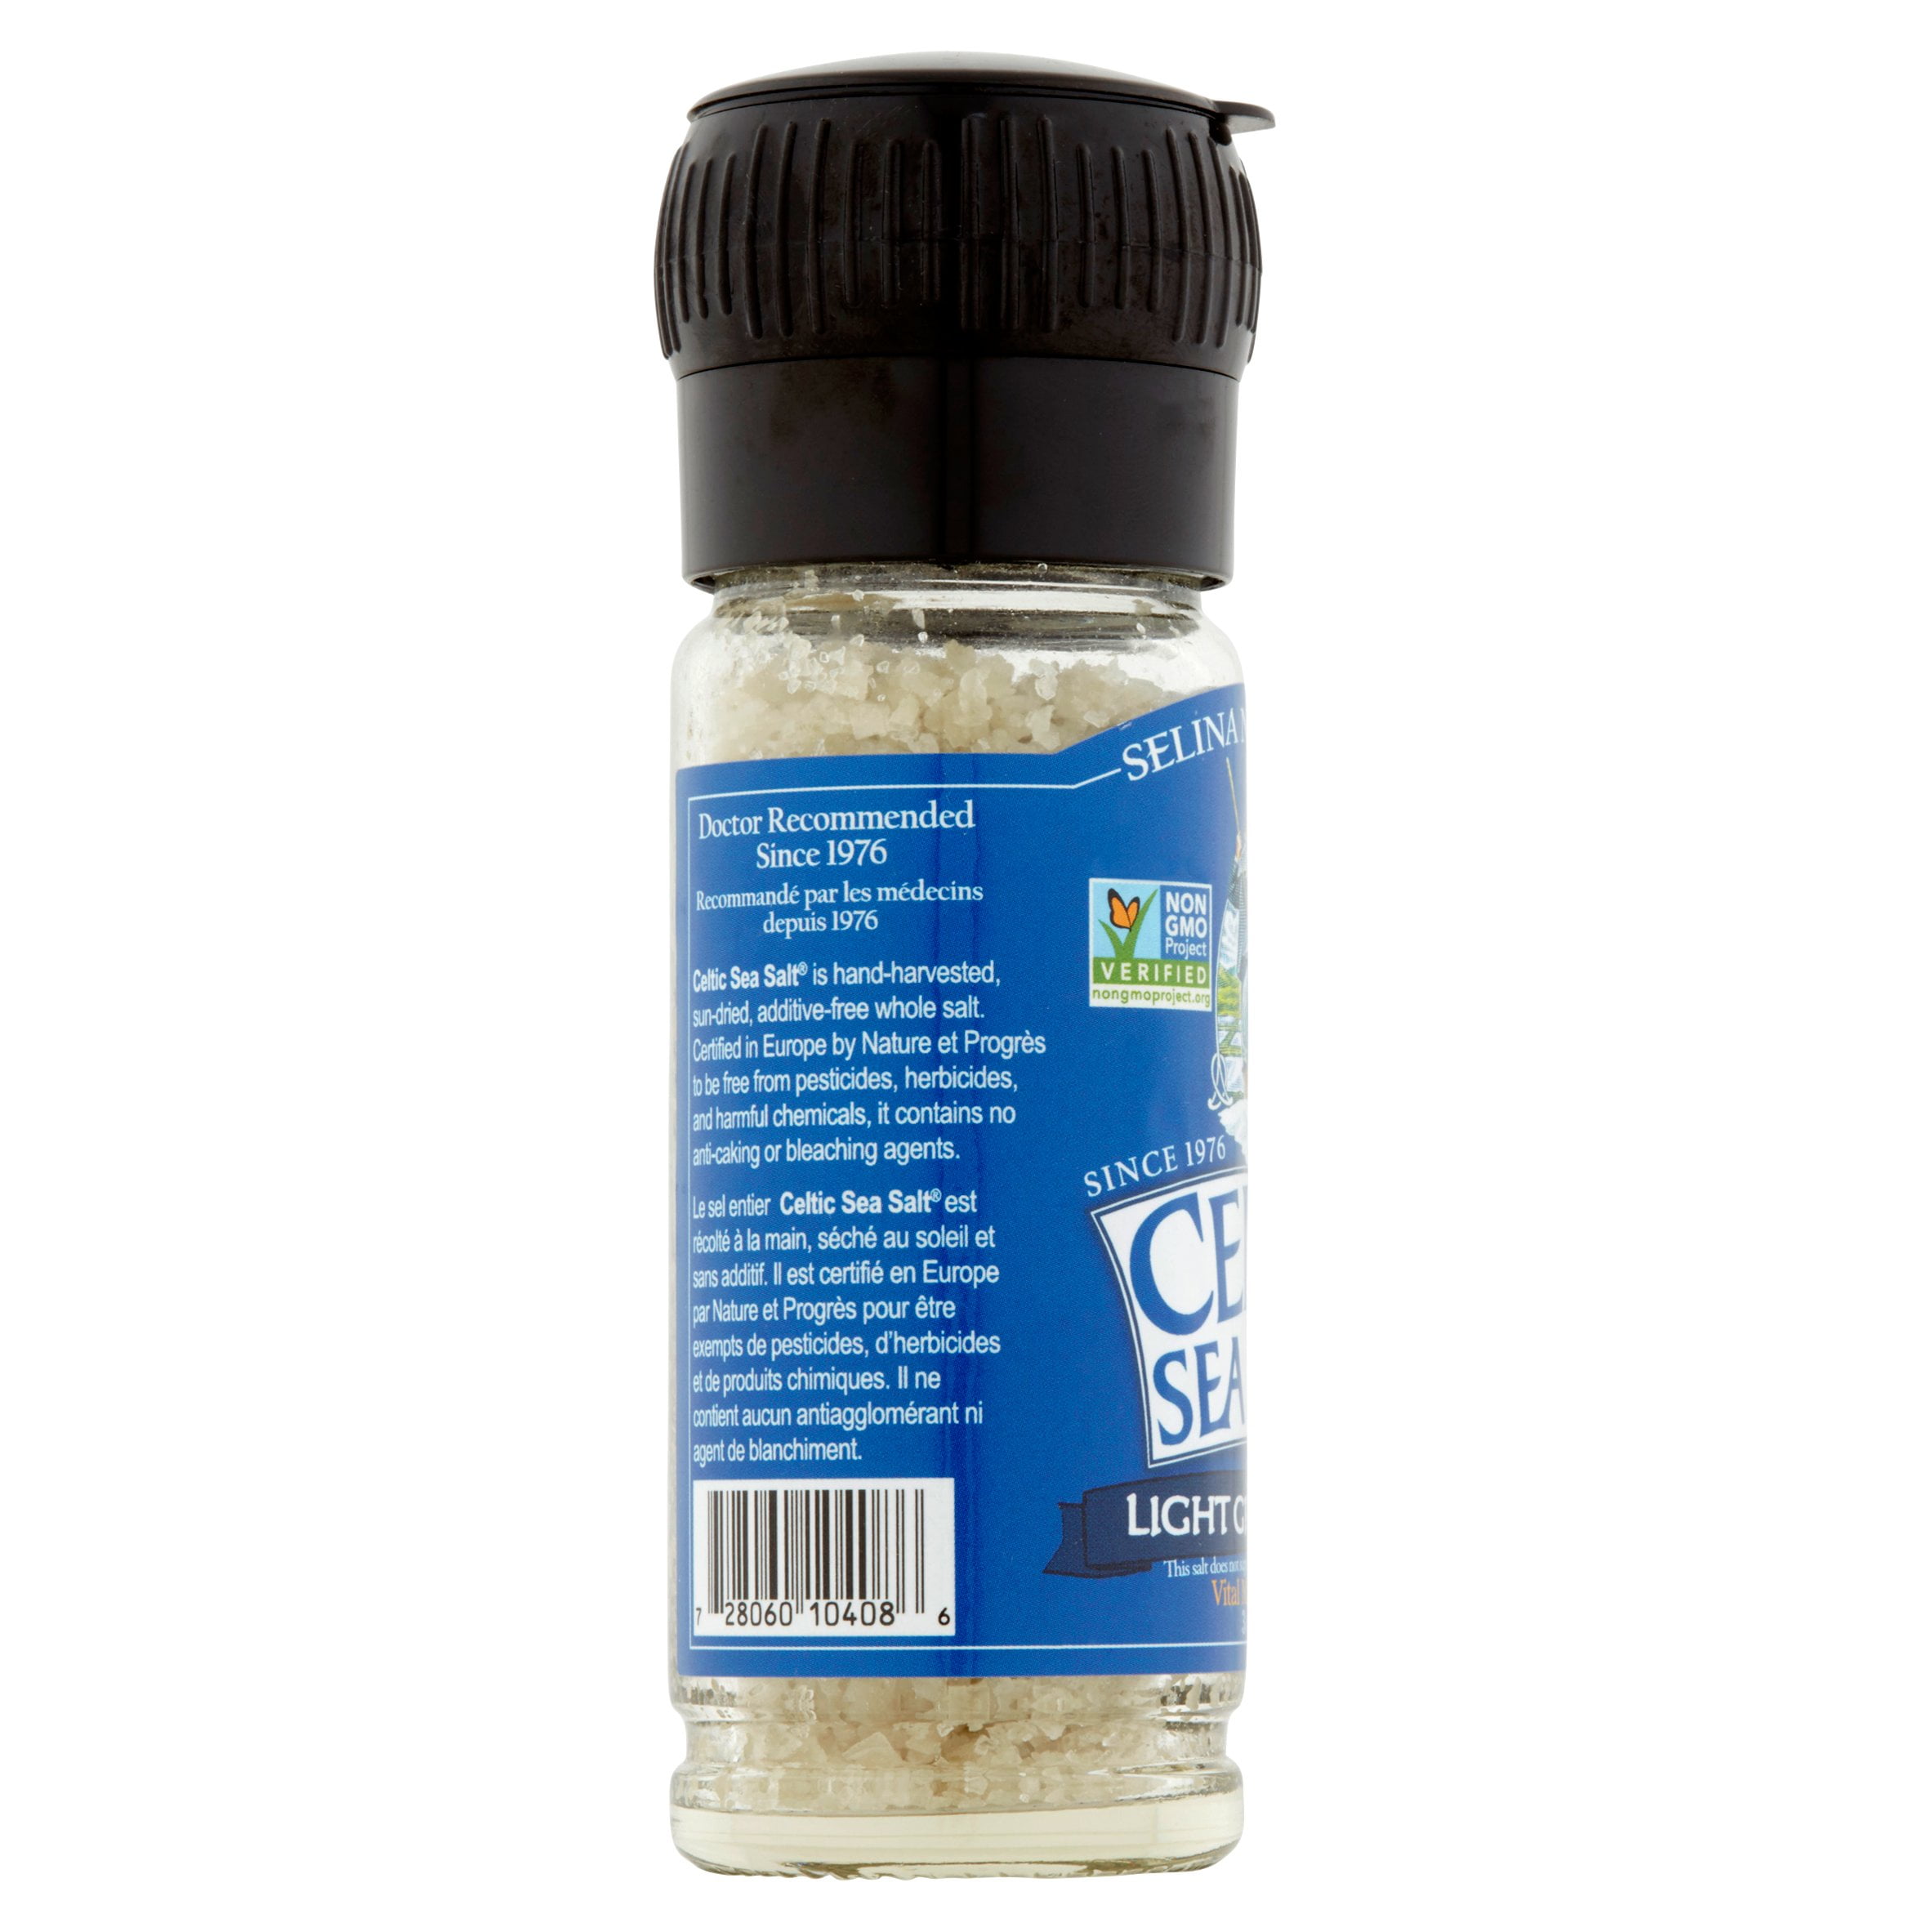 Selina Naturally Curso de sal marina celta gris claro con molinillo  integrado - 3 oz